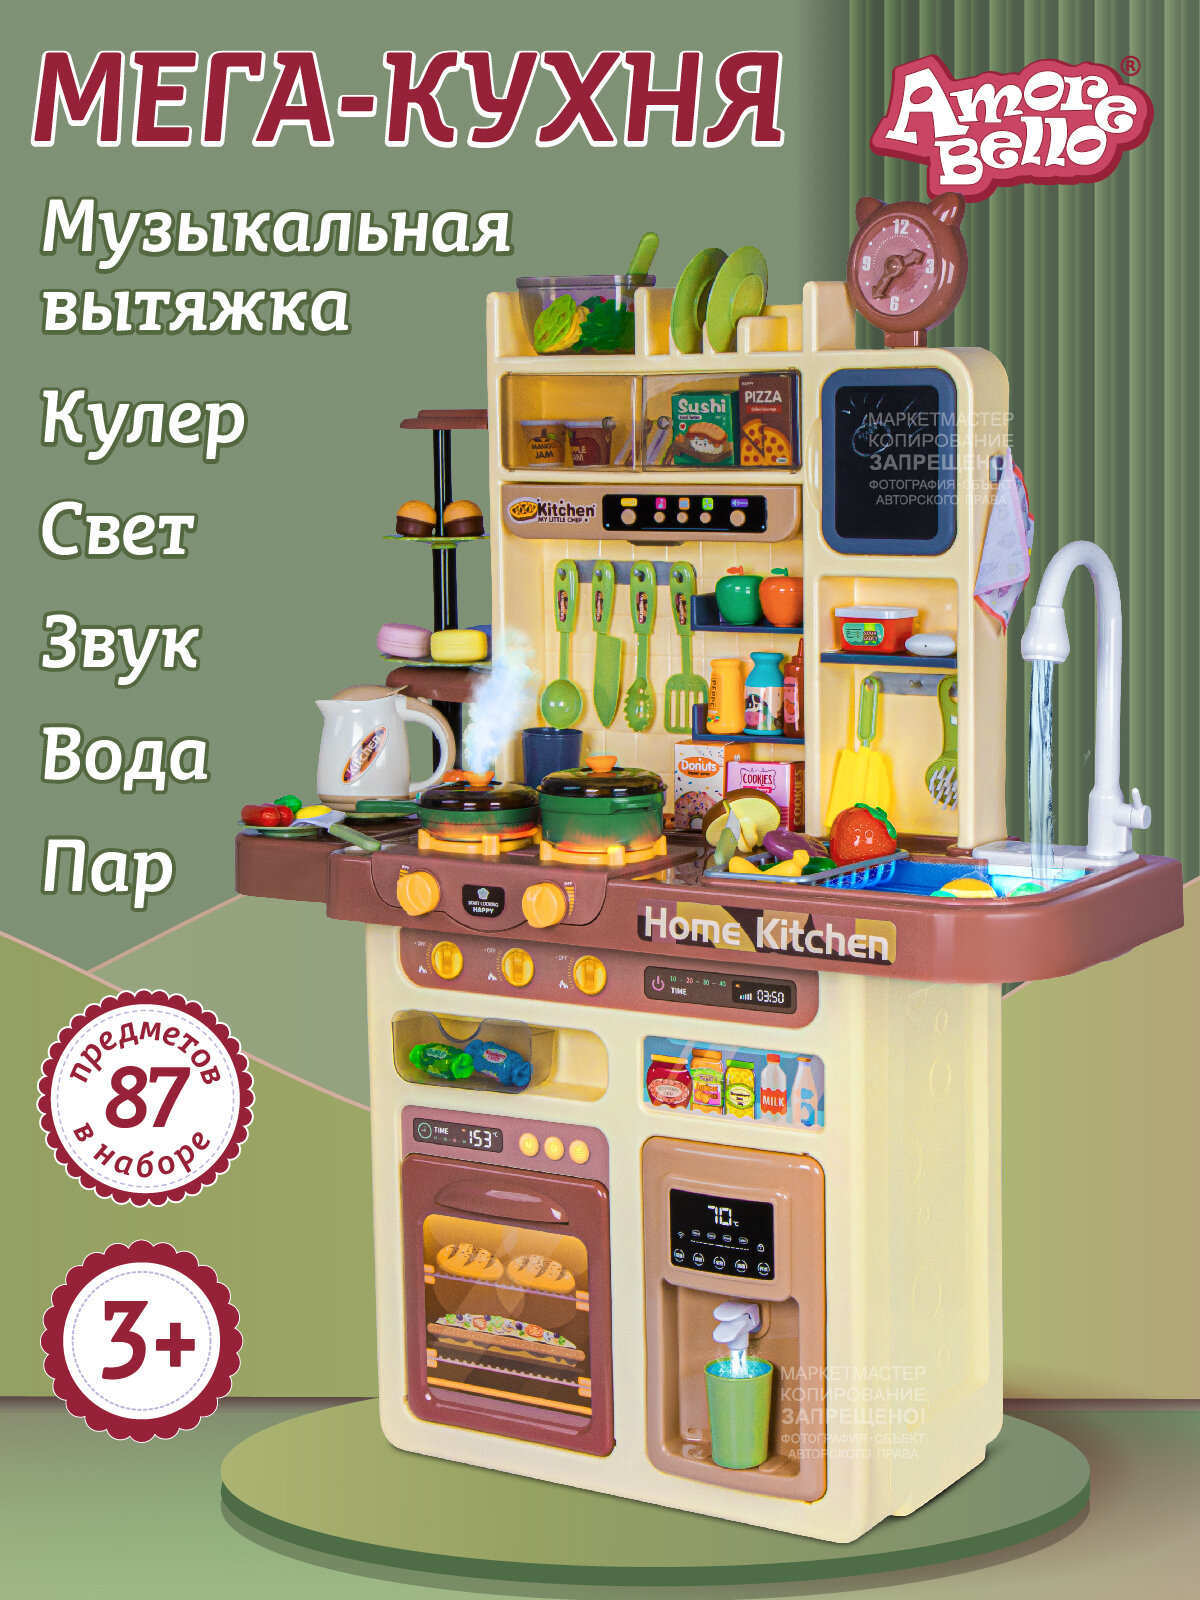 Игровой набор "мега Кухня", кран с водой, плита с паром, музыкальная вытяжка, кулер, свет, звук, JB0211651